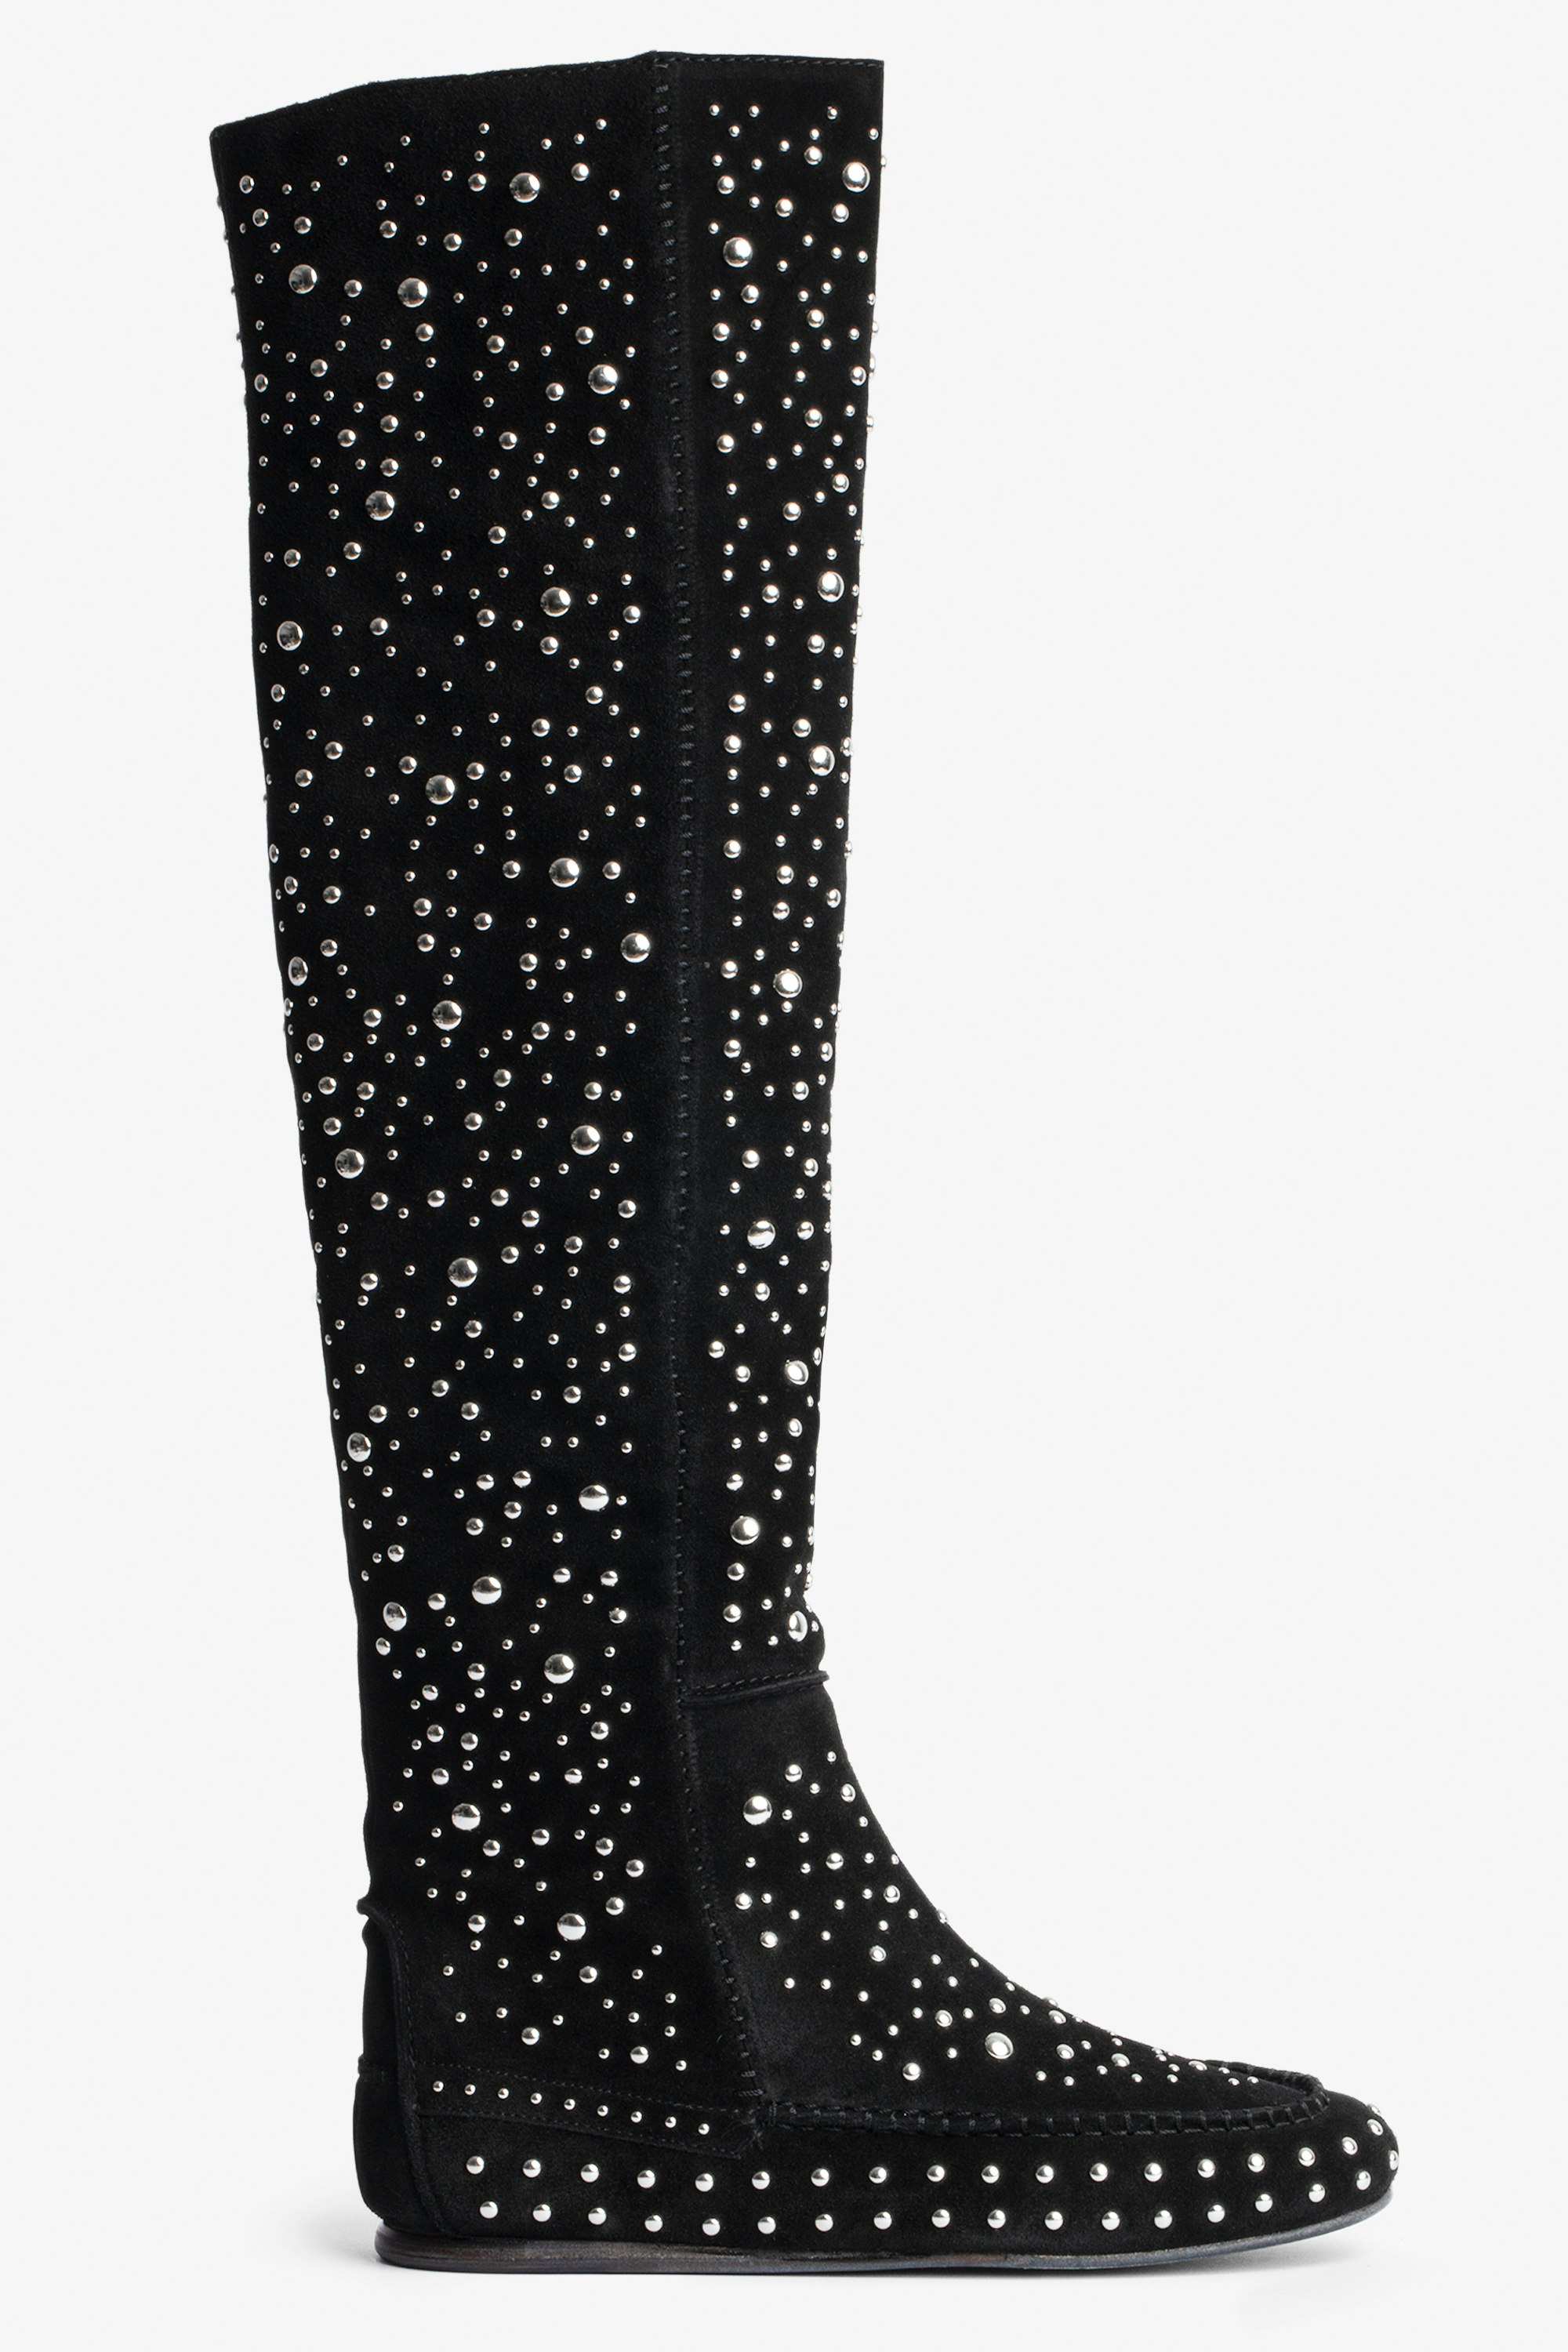 Stiefel Santa Hohe Damenstiefel aus schwarzem Veloursleder mit silberfarbenen Nieten und Steppnähten